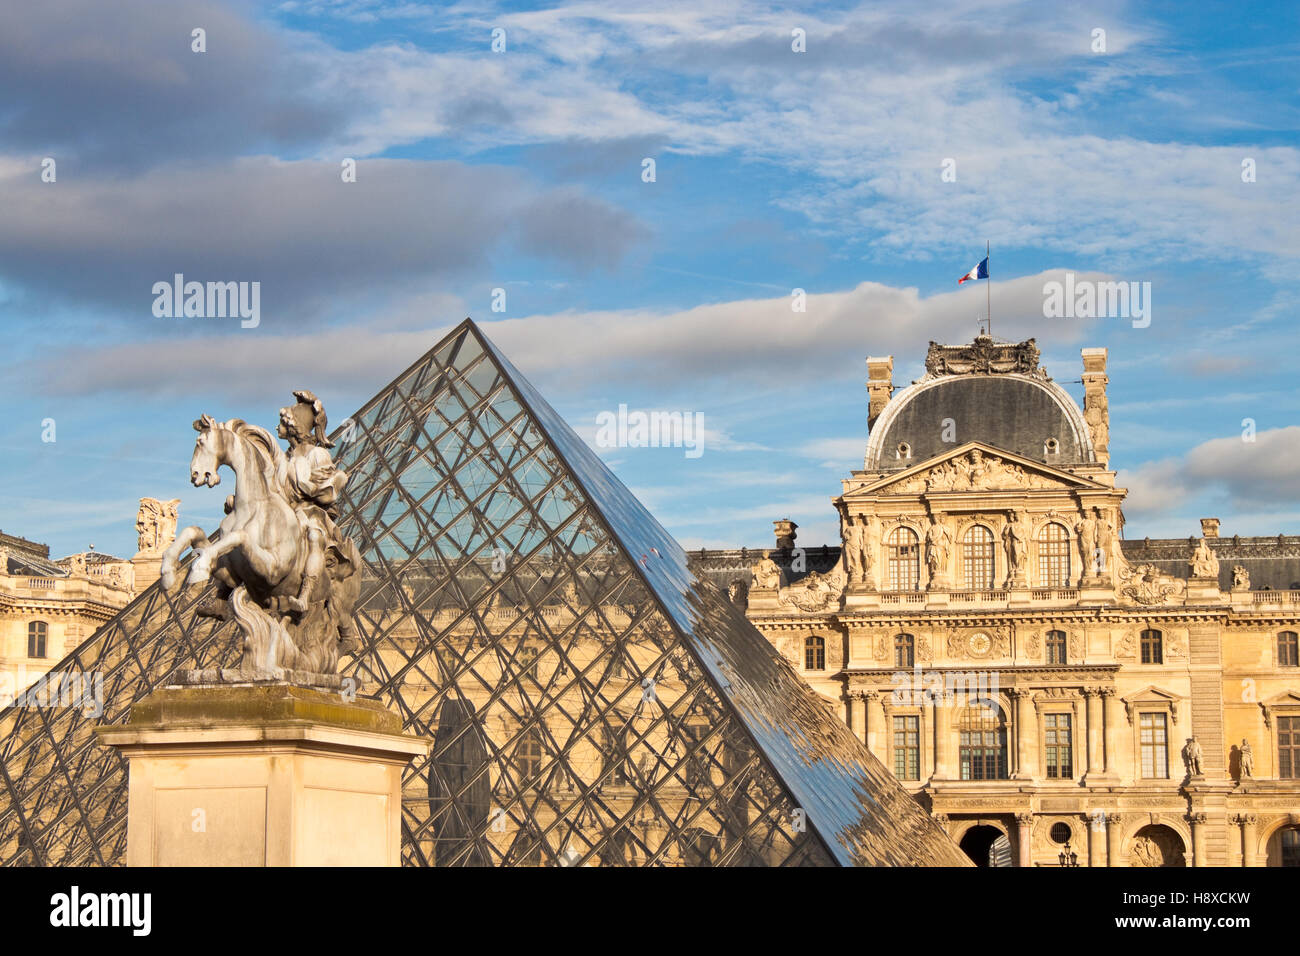 PARIS - le 19 septembre 2013 : statue équestre du roi Louis XIV en face de palais du Louvre et la Pyramide à Paris, France. Banque D'Images